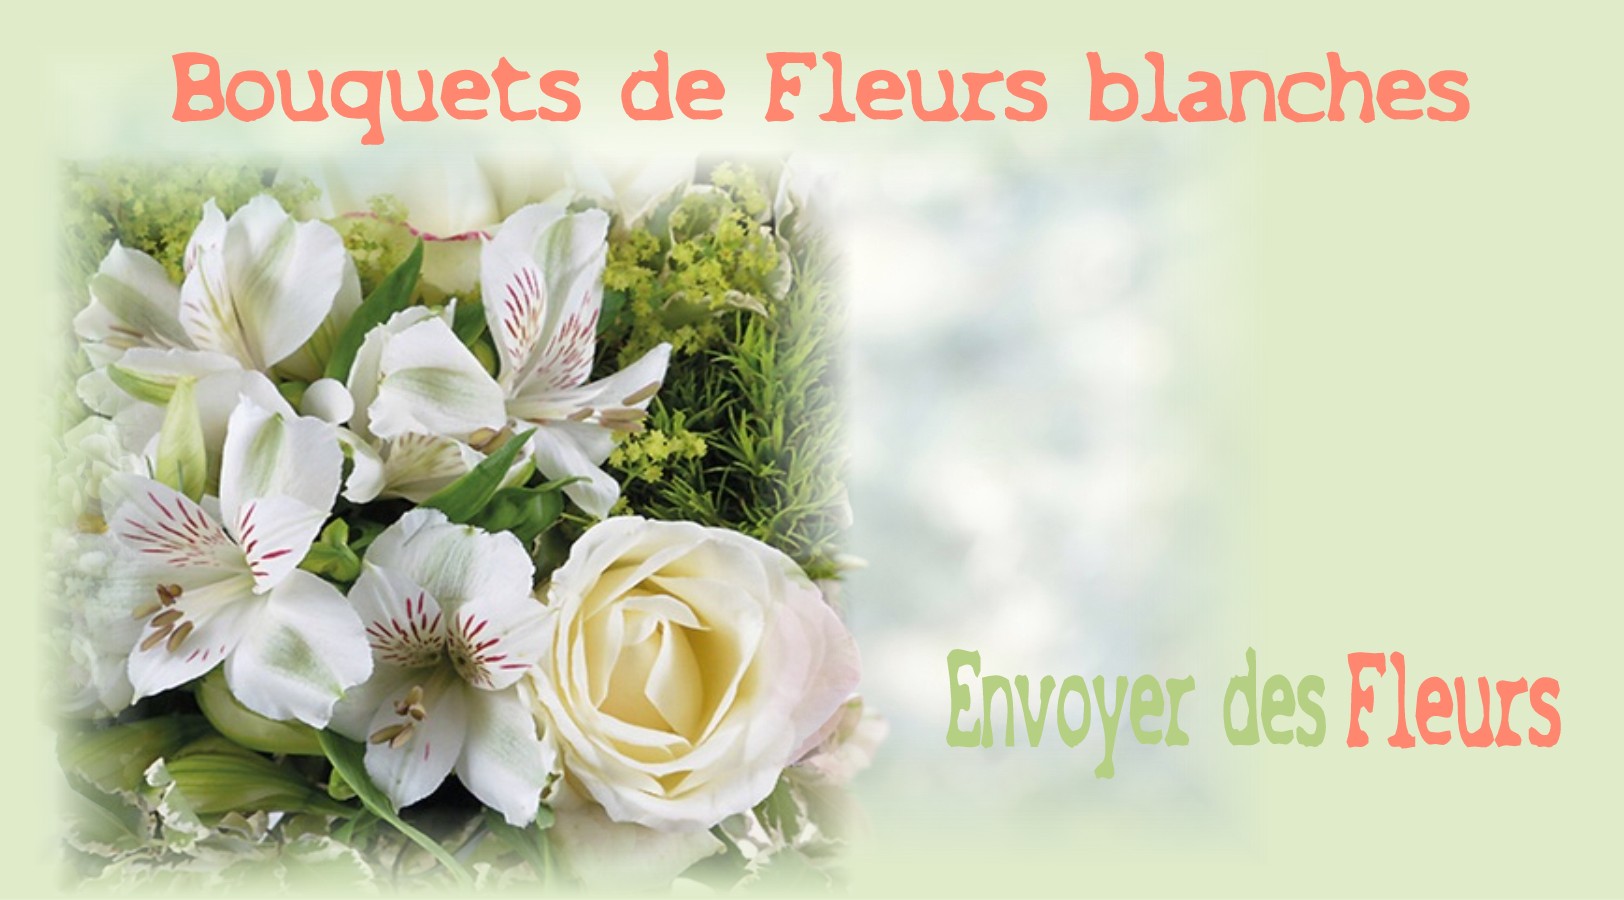 BOUQUETS DE FLEURS BLANCHES -FLEURISTE LILLE (59) - ENVOYER DES FLEURS